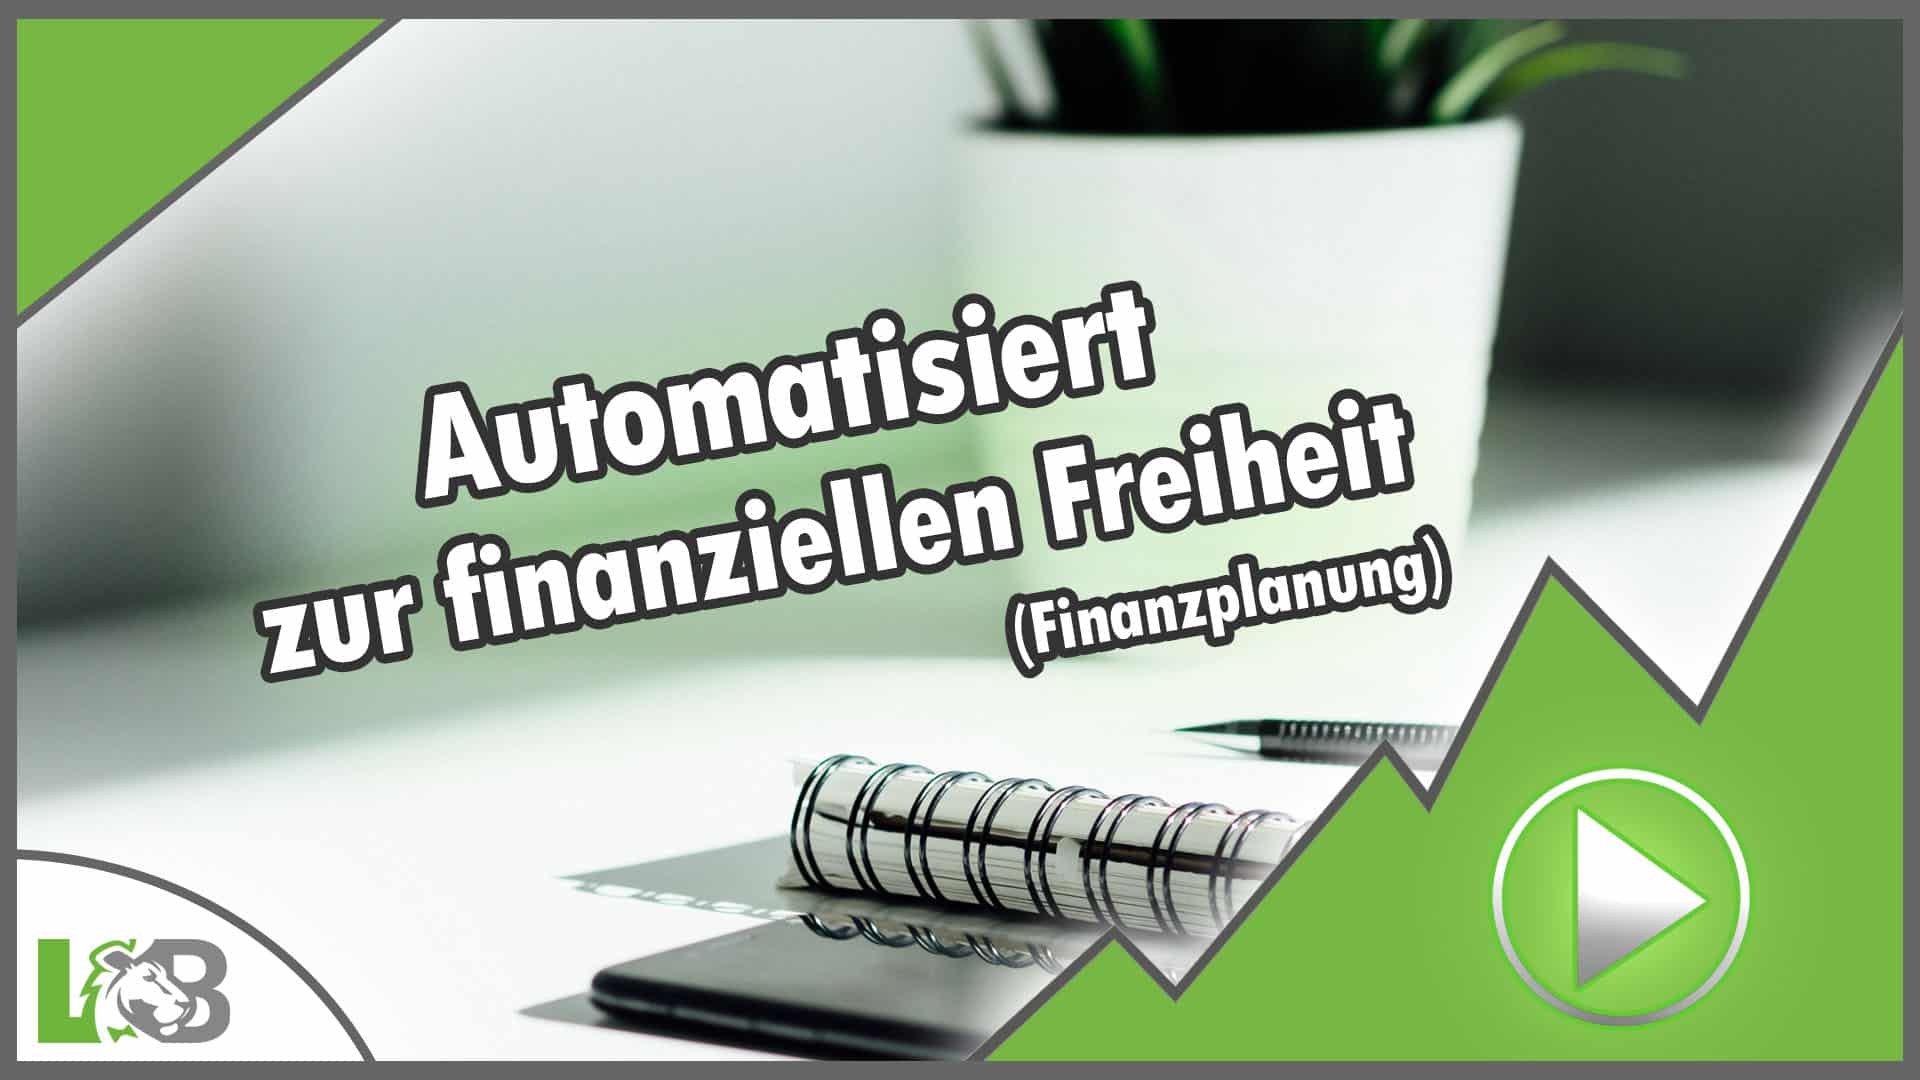 Leonard Bardi - LB - Thumbnail - Automatisiert zur finanziellen Freiheit (Finanzplanung)